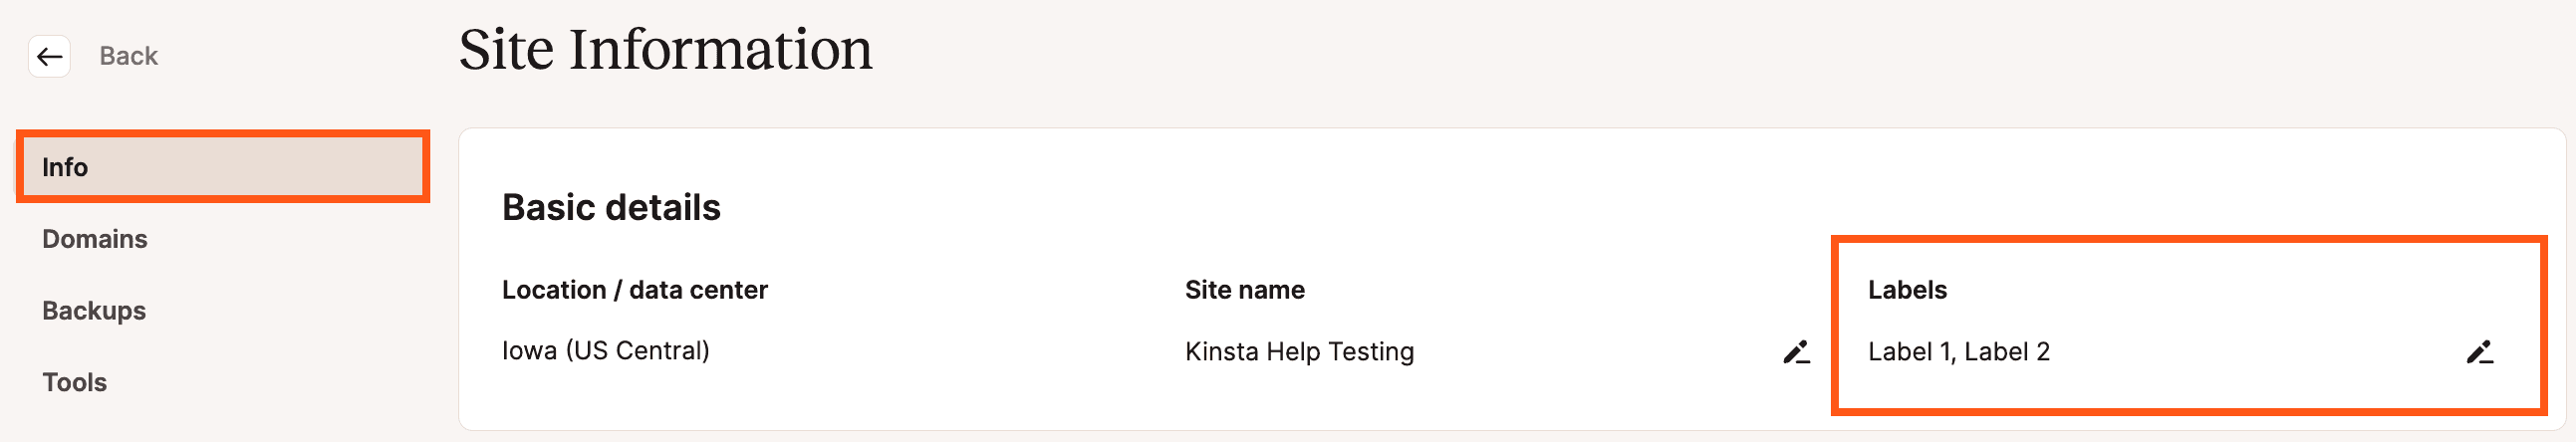 Etiquetas del sitio en la página Información del sitio en MyKinsta.